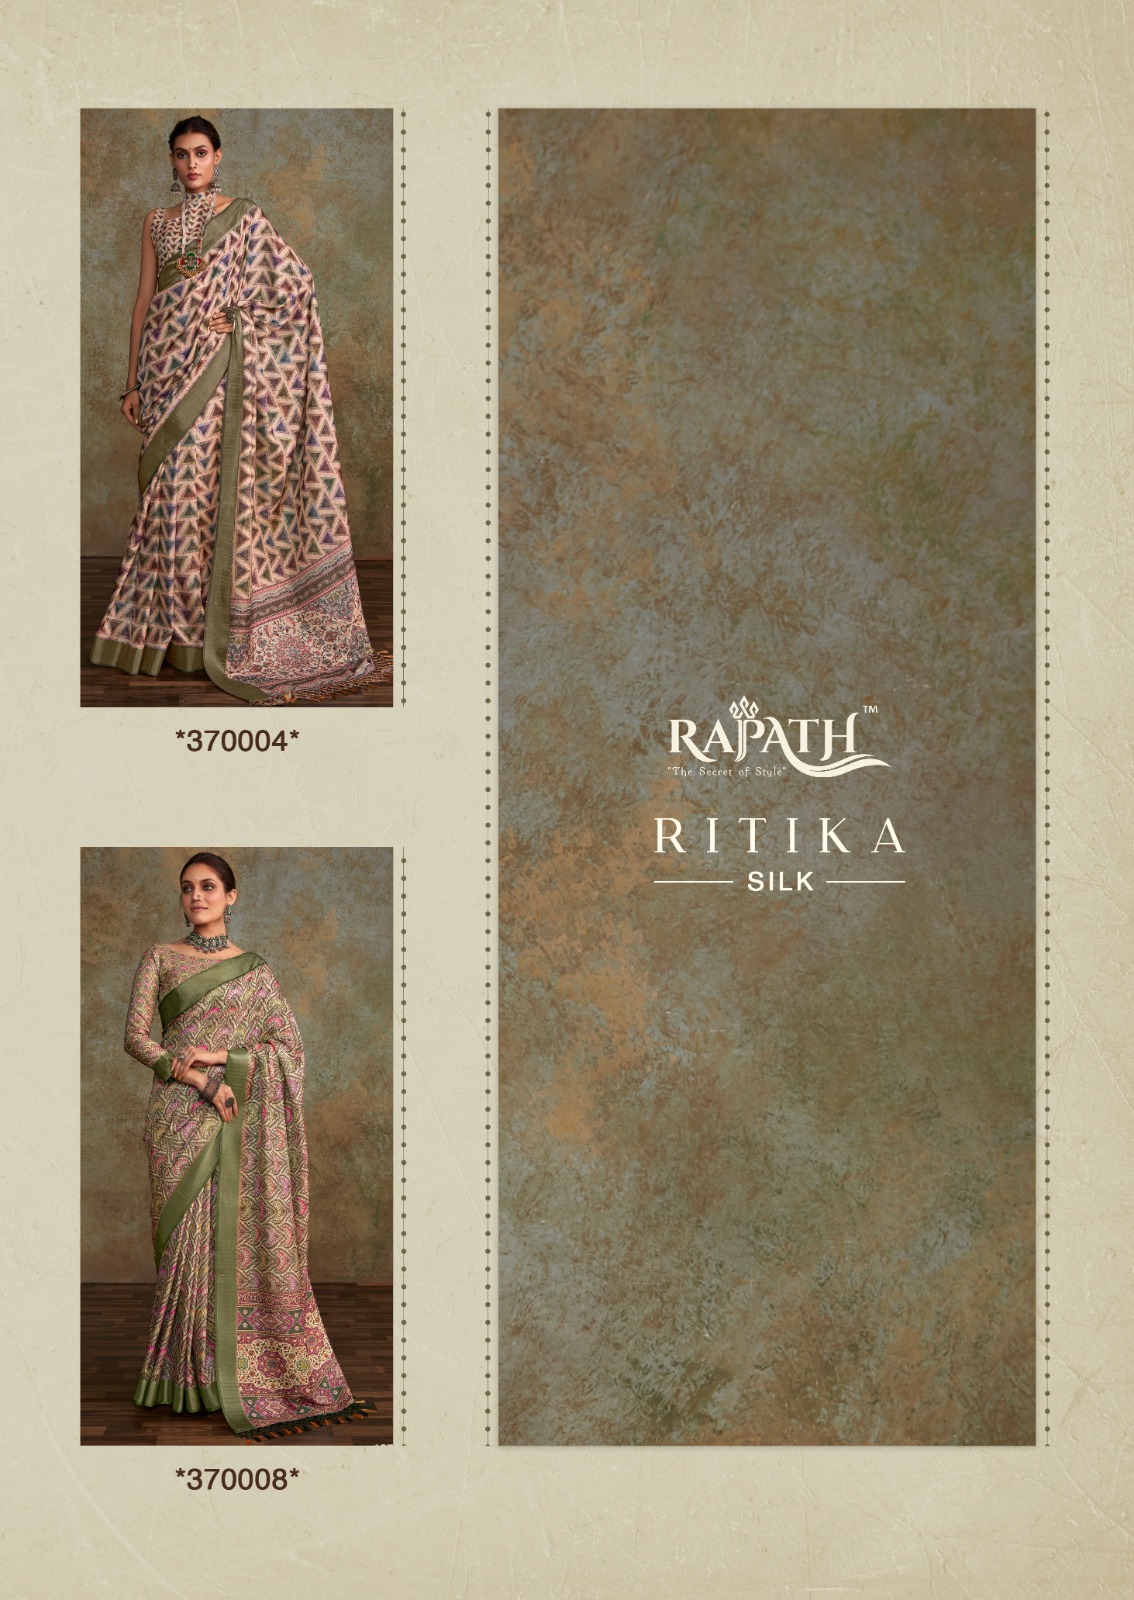 Rajpath Ritika Silk collection 4